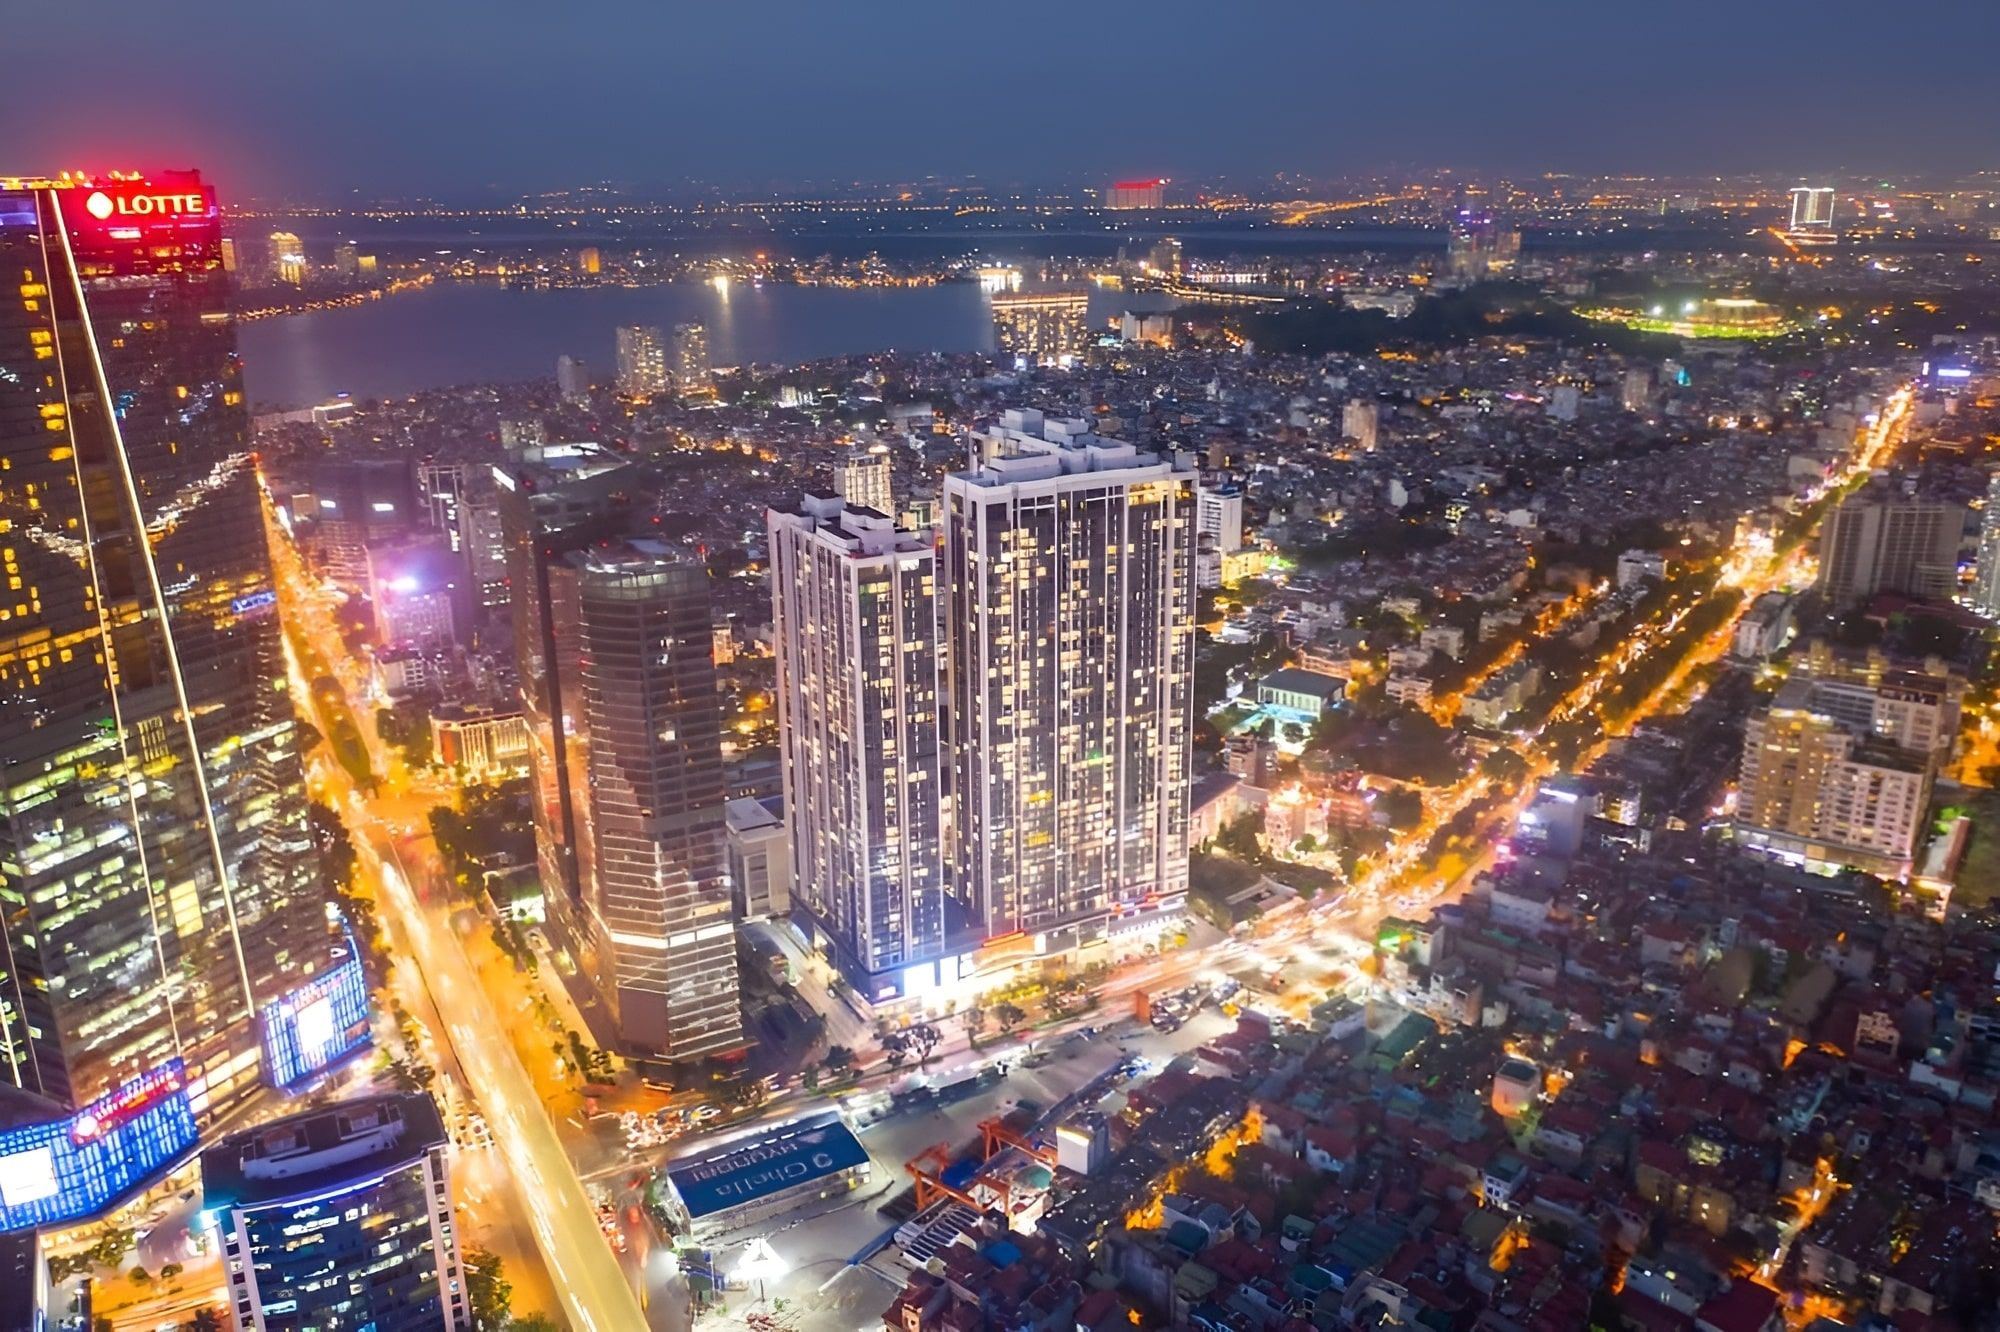 Hình ảnh tổng quan của dự án Vinhomes Metropolis Liễu Giai tại Hà Nội